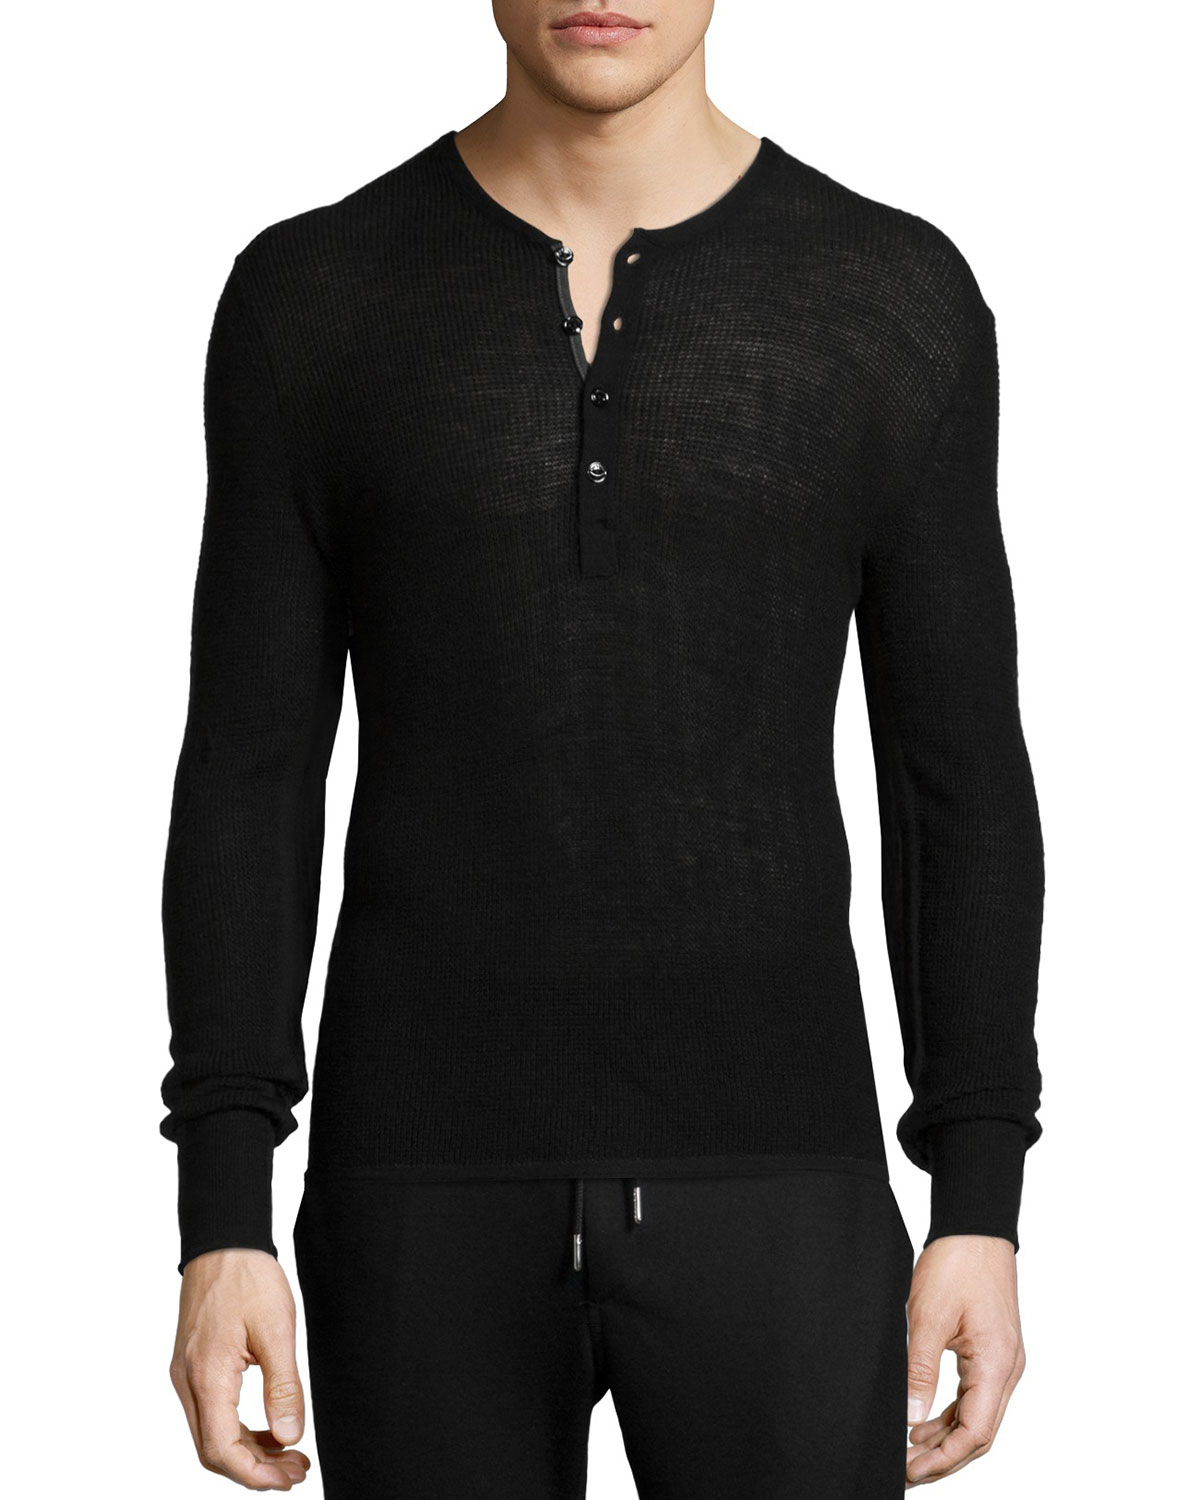 Rag & Bone Garrett Thermal Long-sleeve Henley Shirt in Black for Men - Lyst